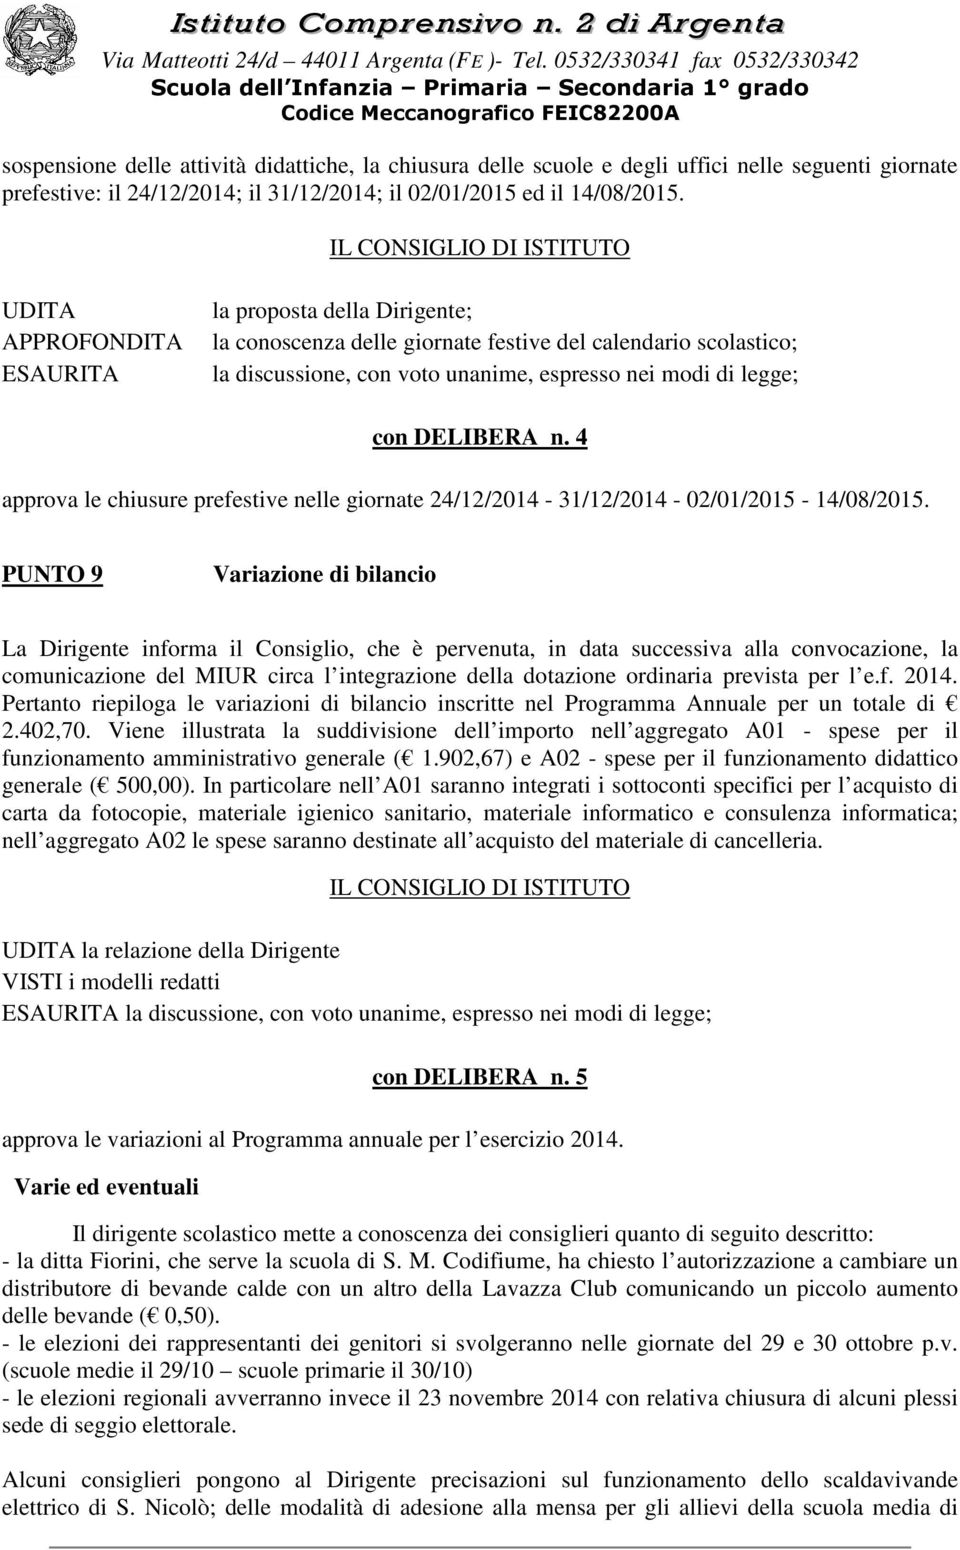 4 approva le chiusure prefestive nelle giornate 24/12/2014-31/12/2014-02/01/2015-14/08/2015.